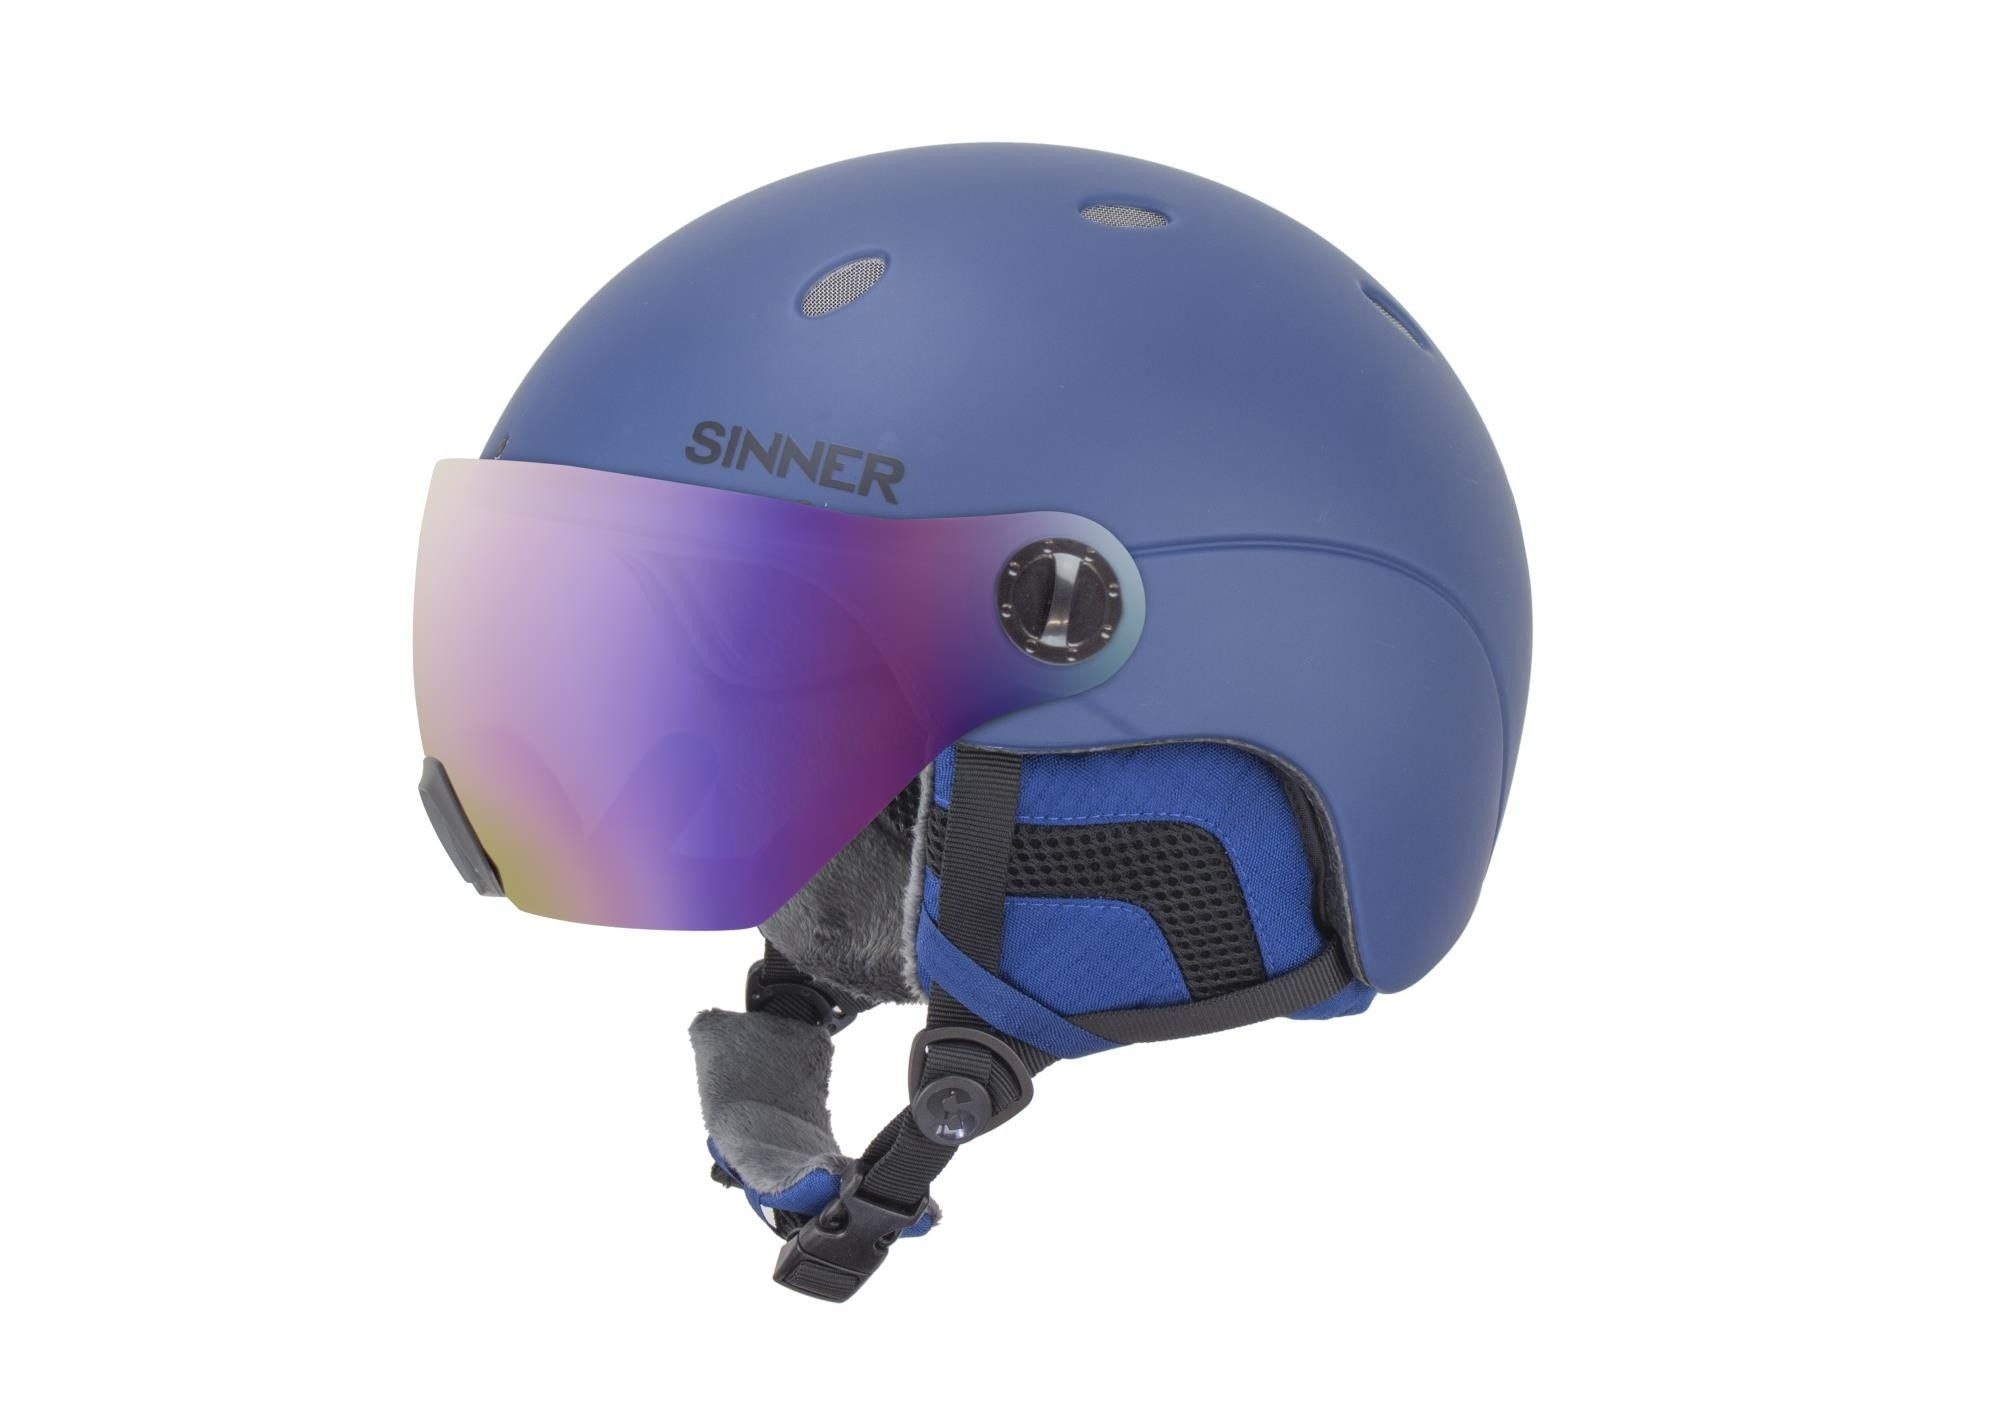 Sandy Bedoel personeelszaken Sinner ski snowboardhelm Titan met Vizier online kopen?